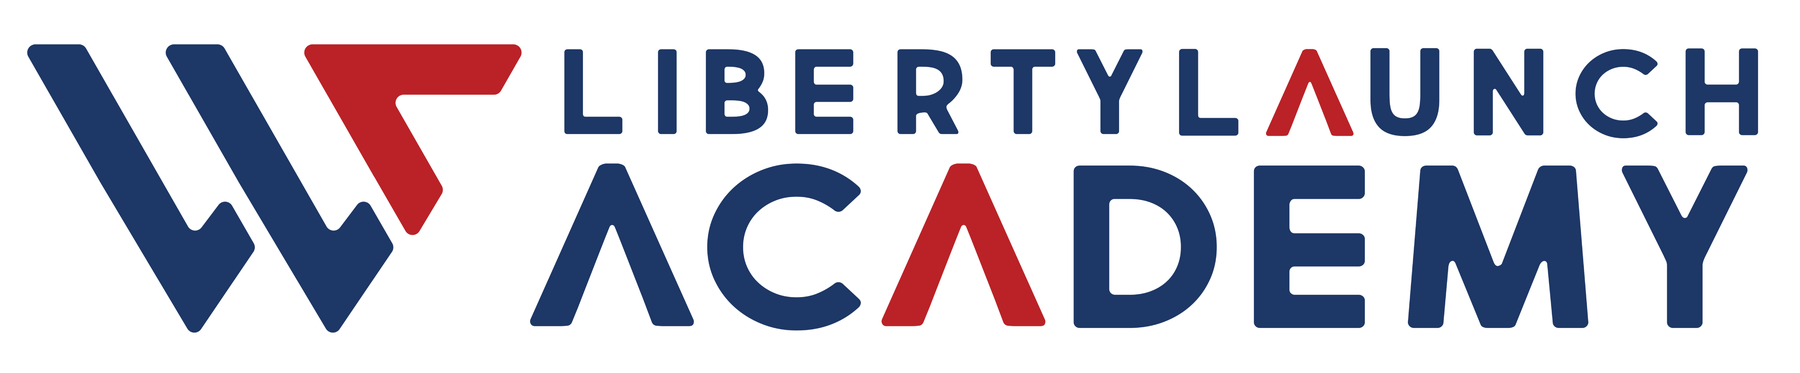 Liberty Launch Academy